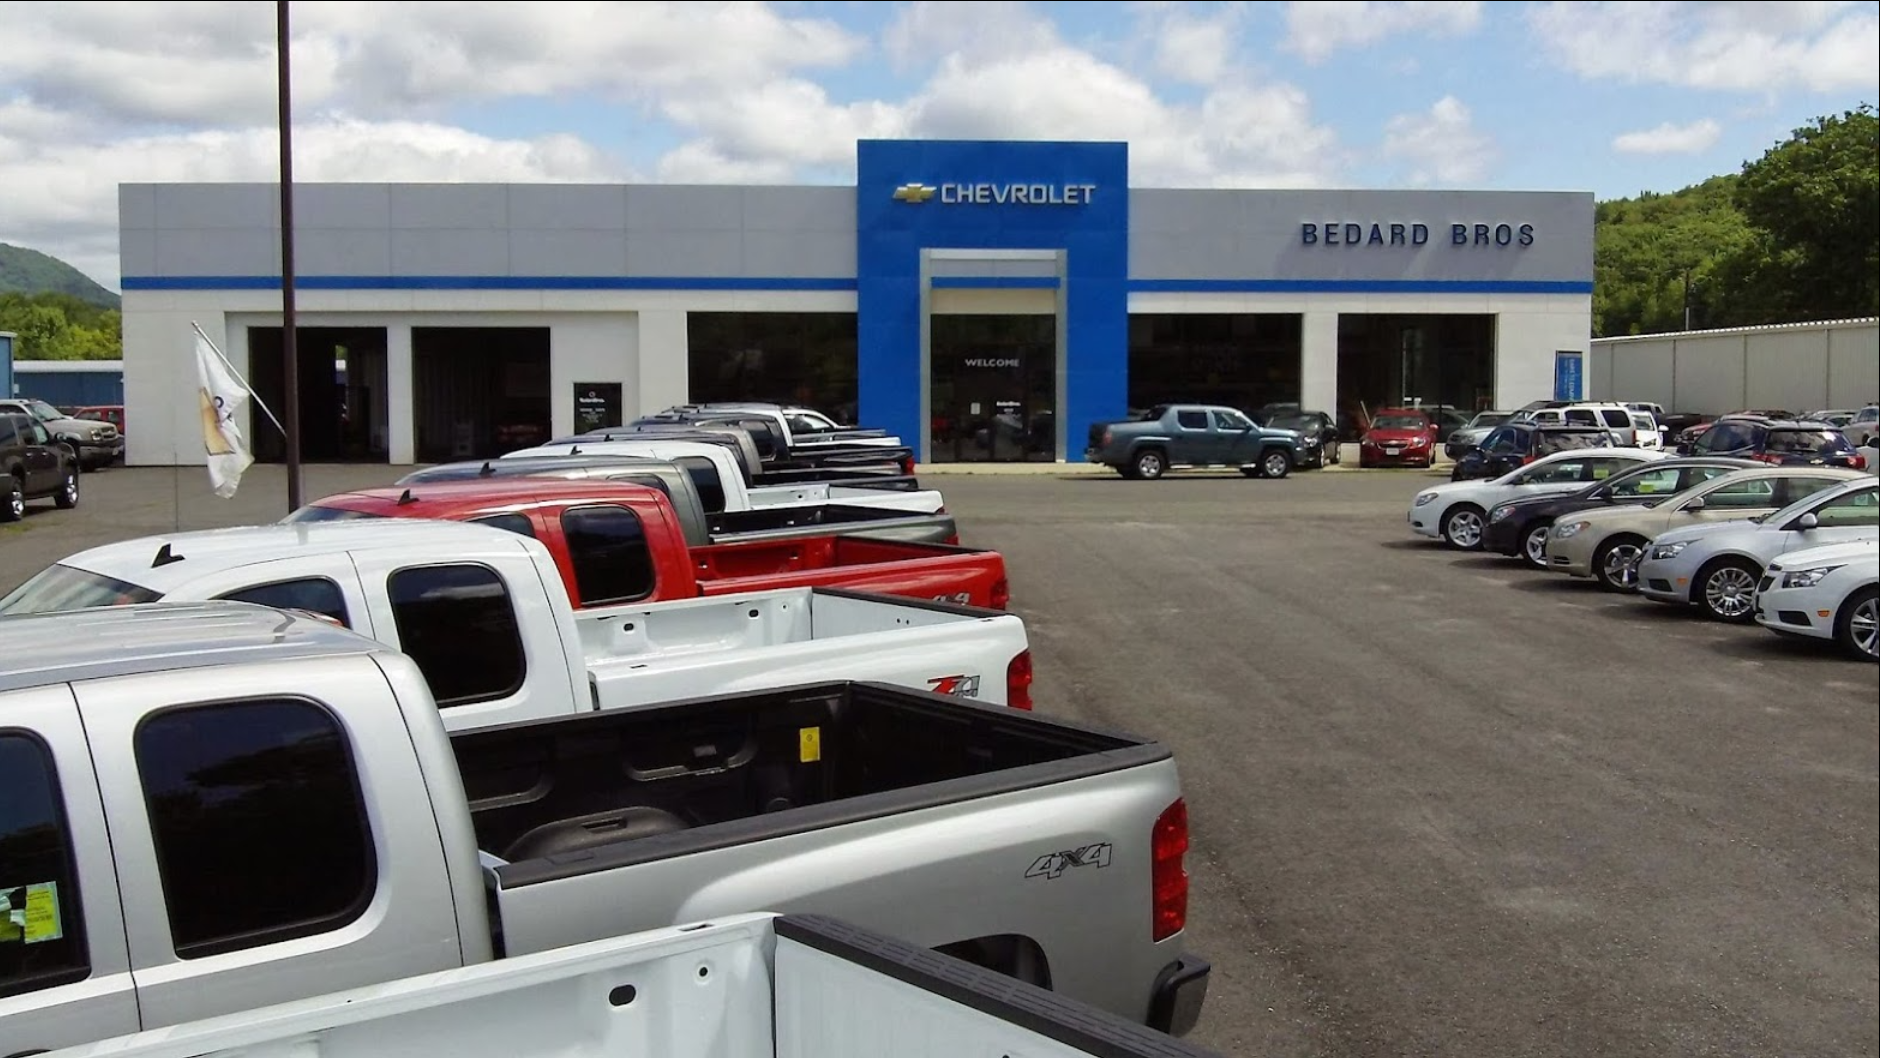 Bedard Bros Chevrolet Service & Parts